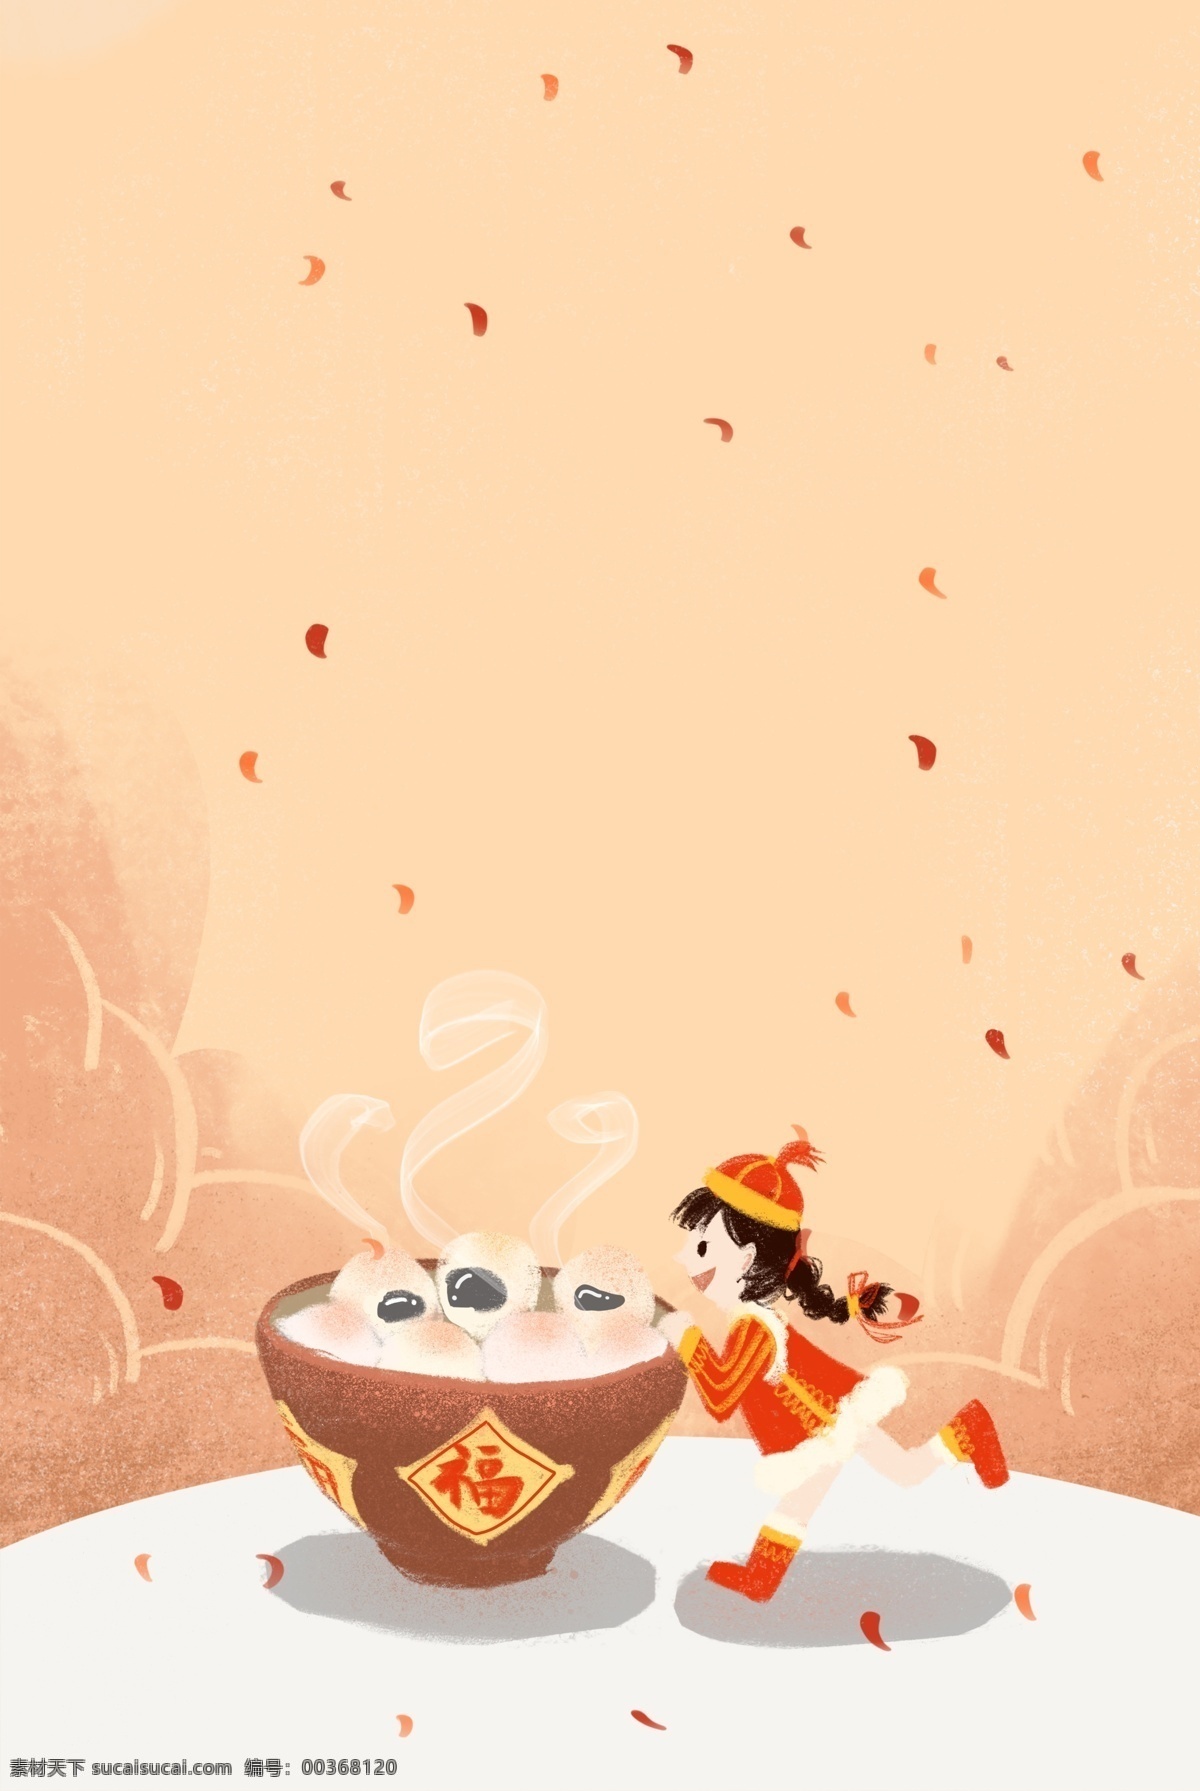 新年 创意 春节 美食 海报 传统节日 人物 插画风 促销海报